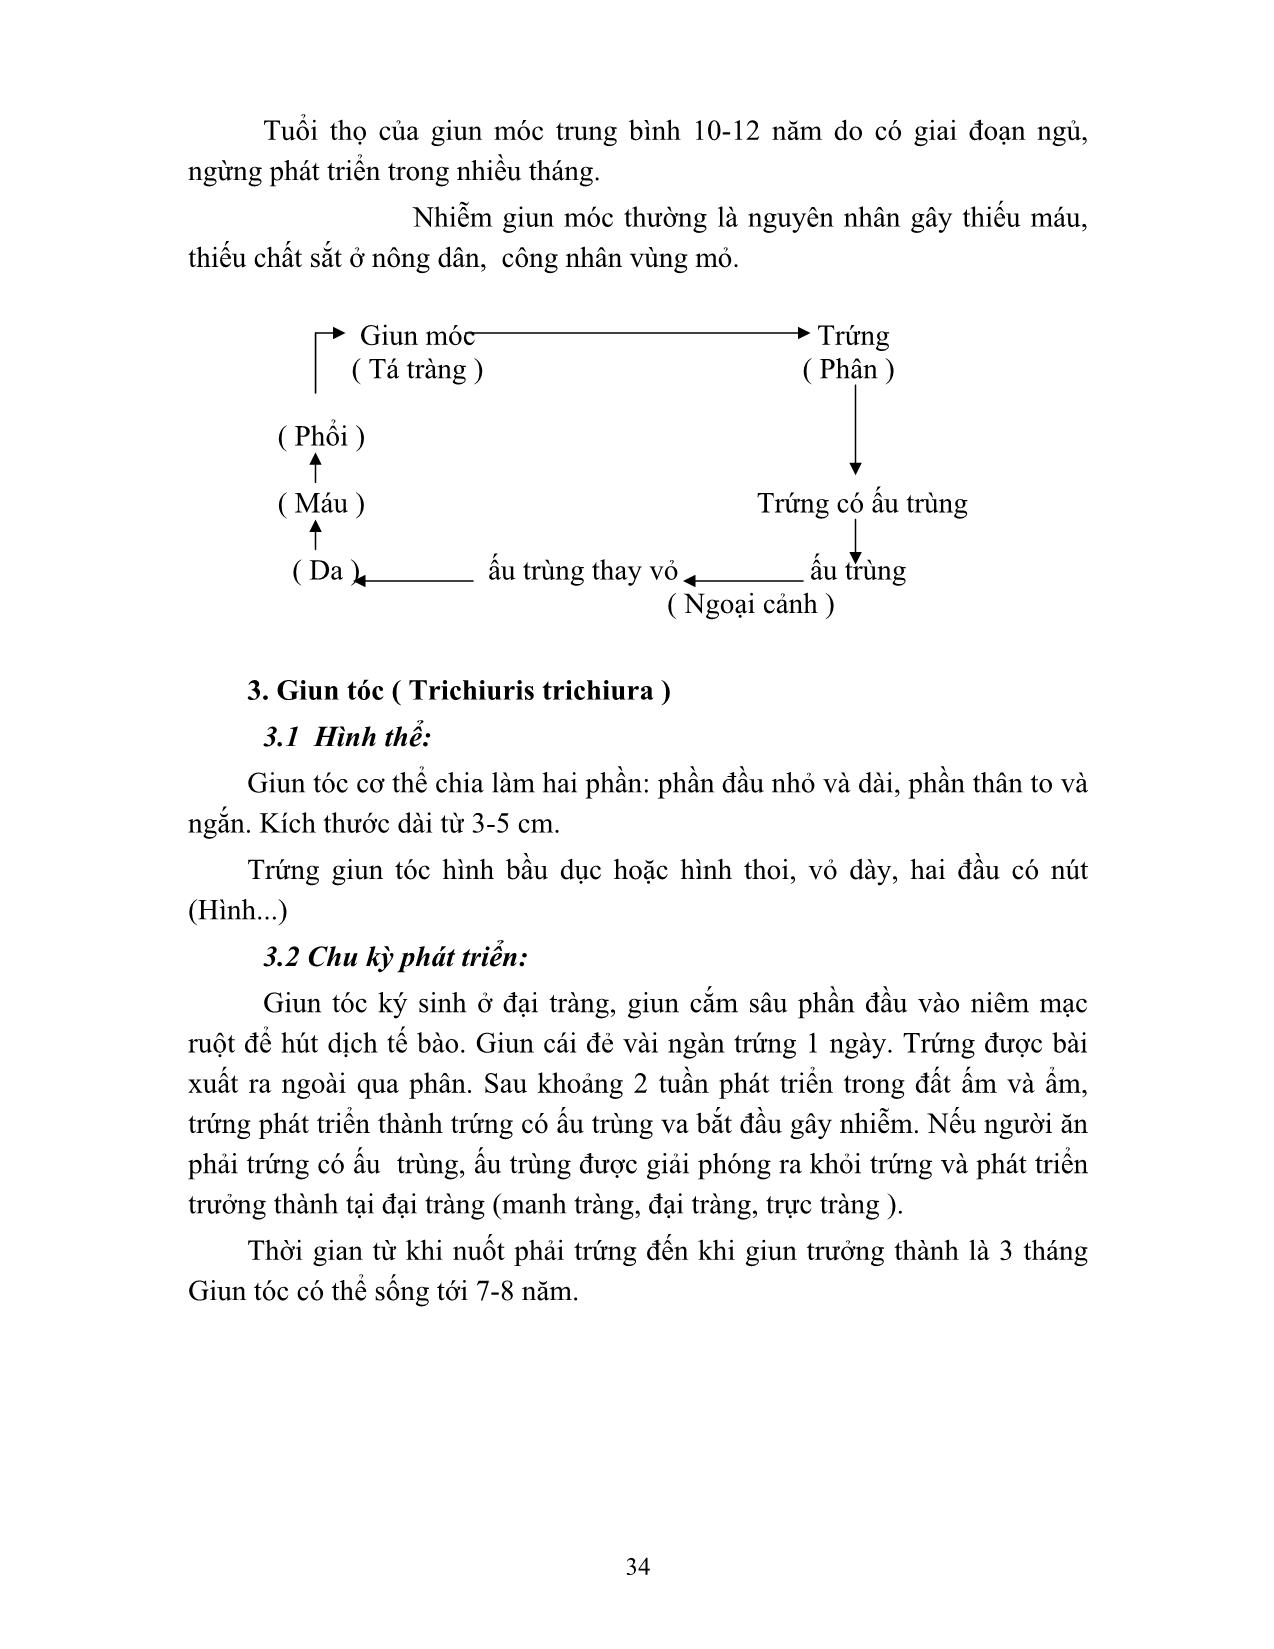 Giáo trình Vi sinh - Ký sinh trùng (Phần 2) trang 3